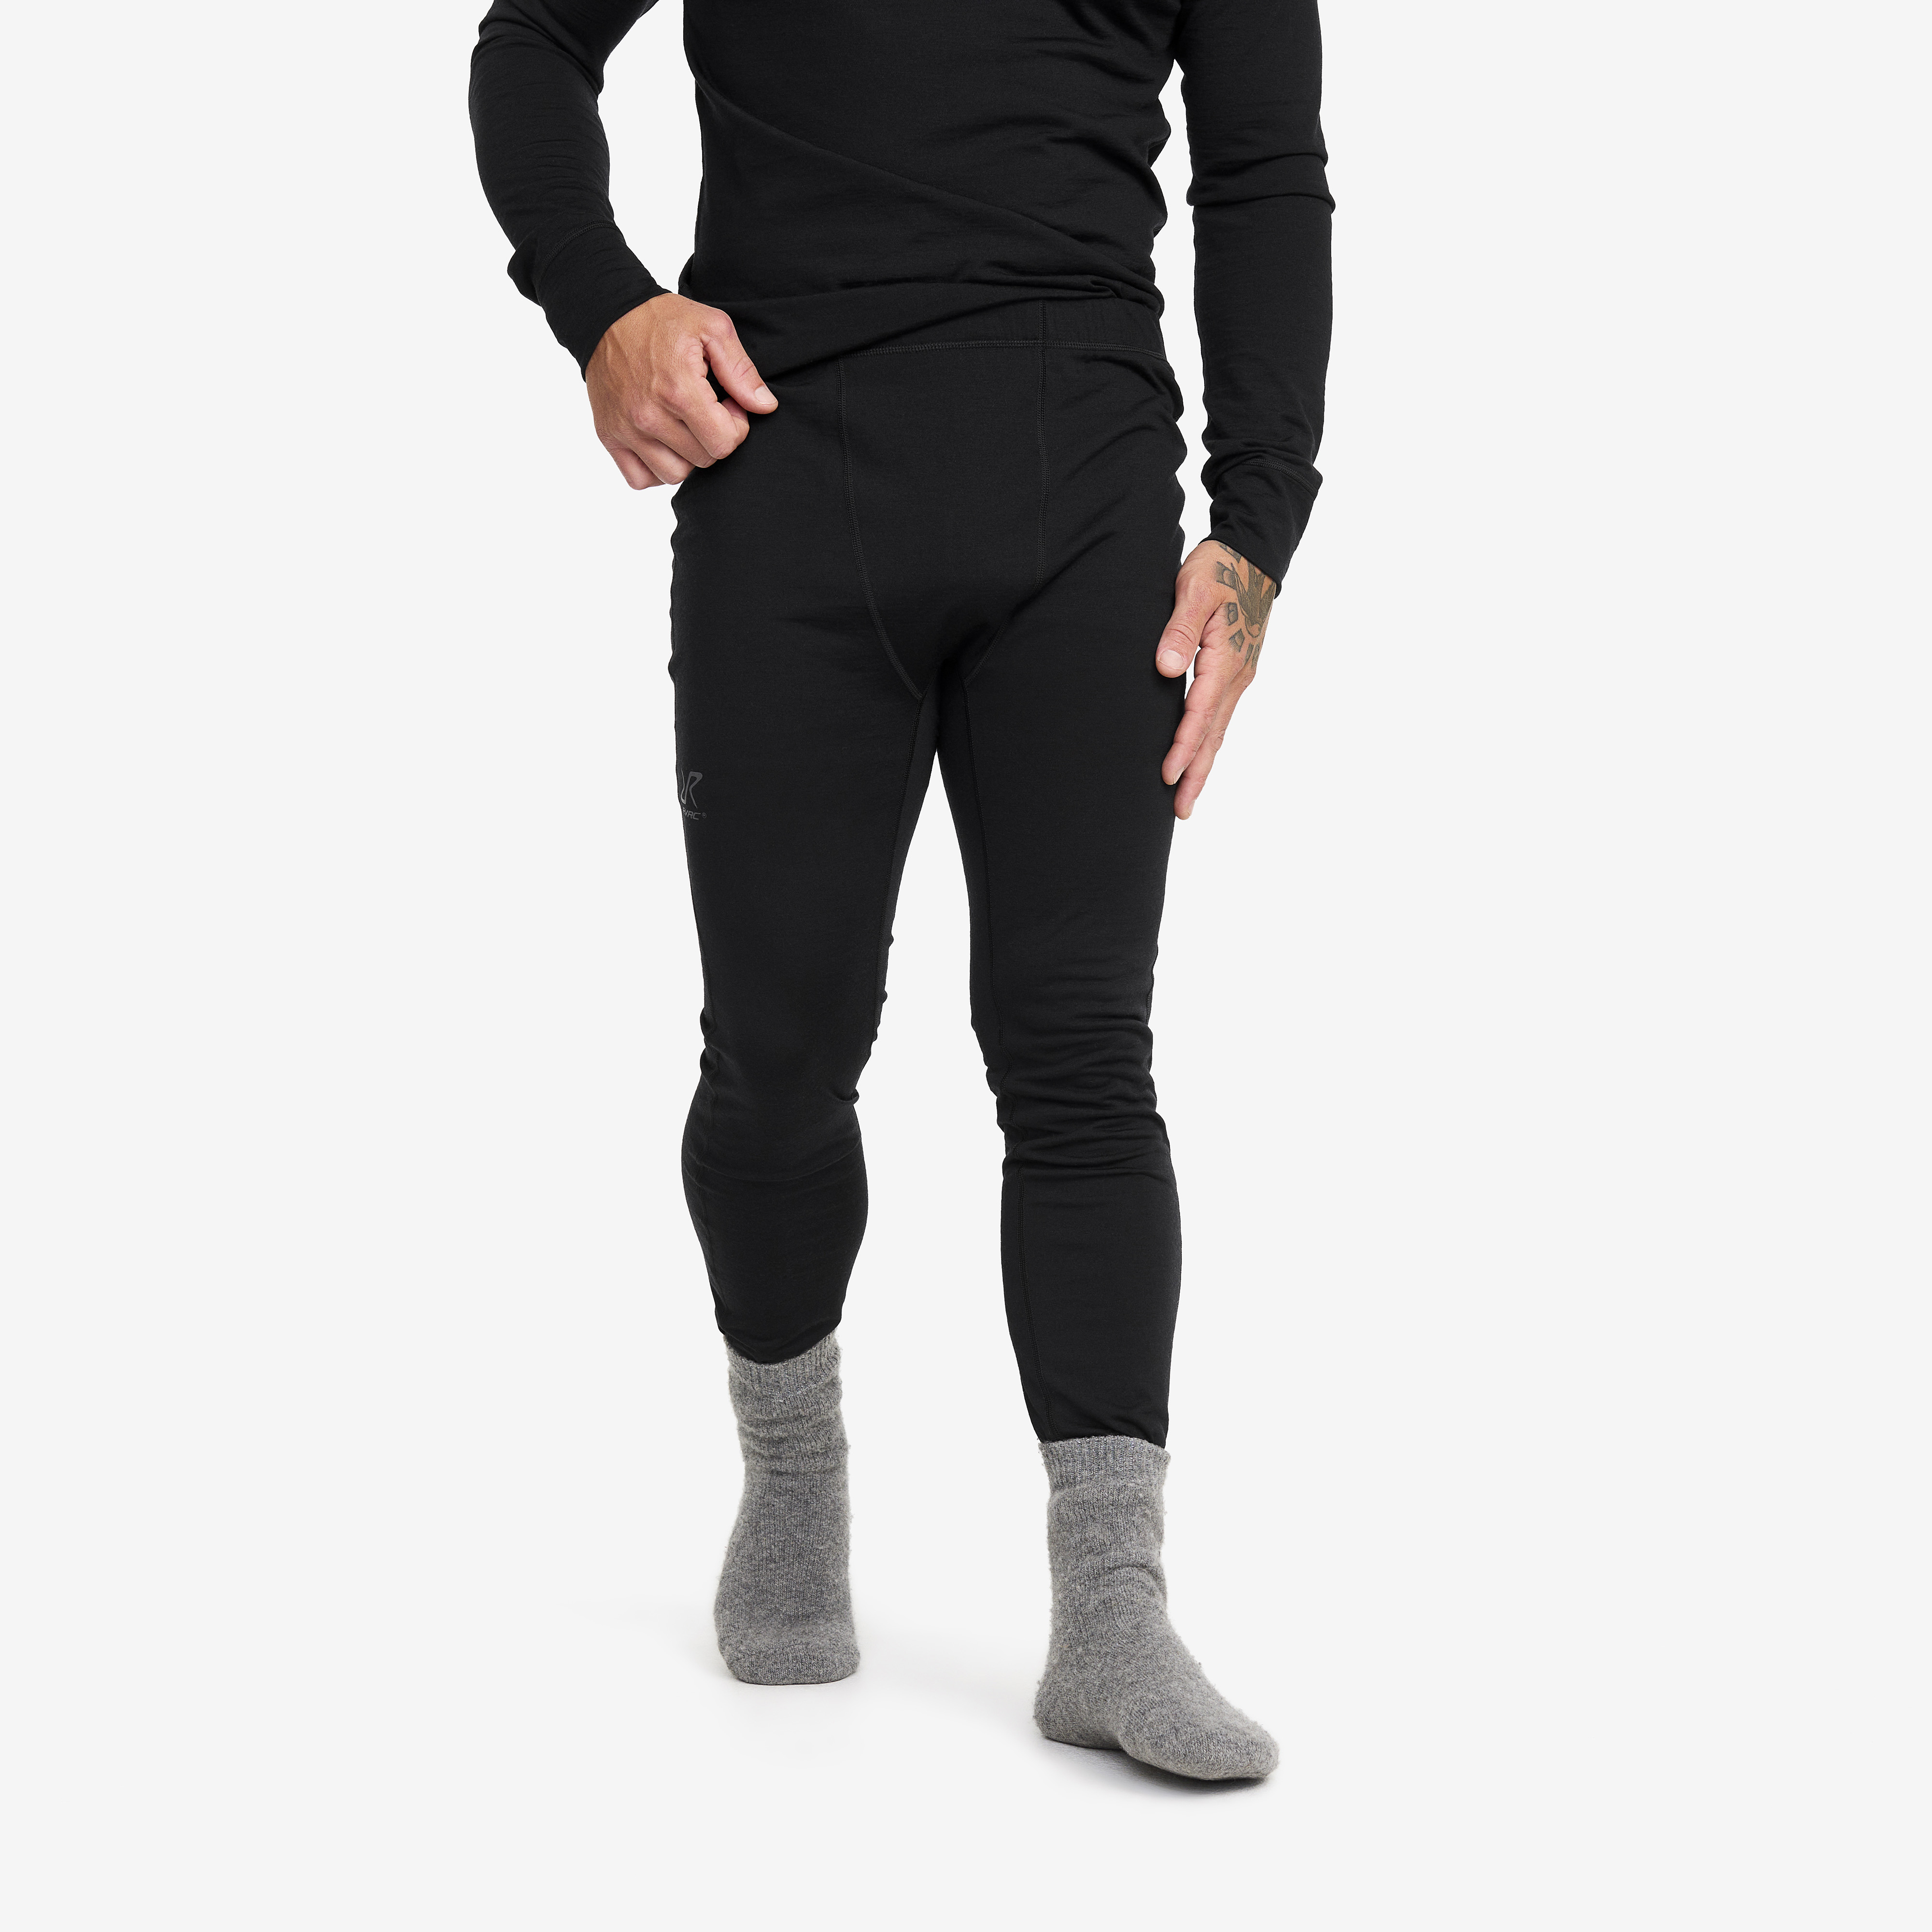 Men's Black Merino Wool Thermal Long Johns, Pants, Perfect for